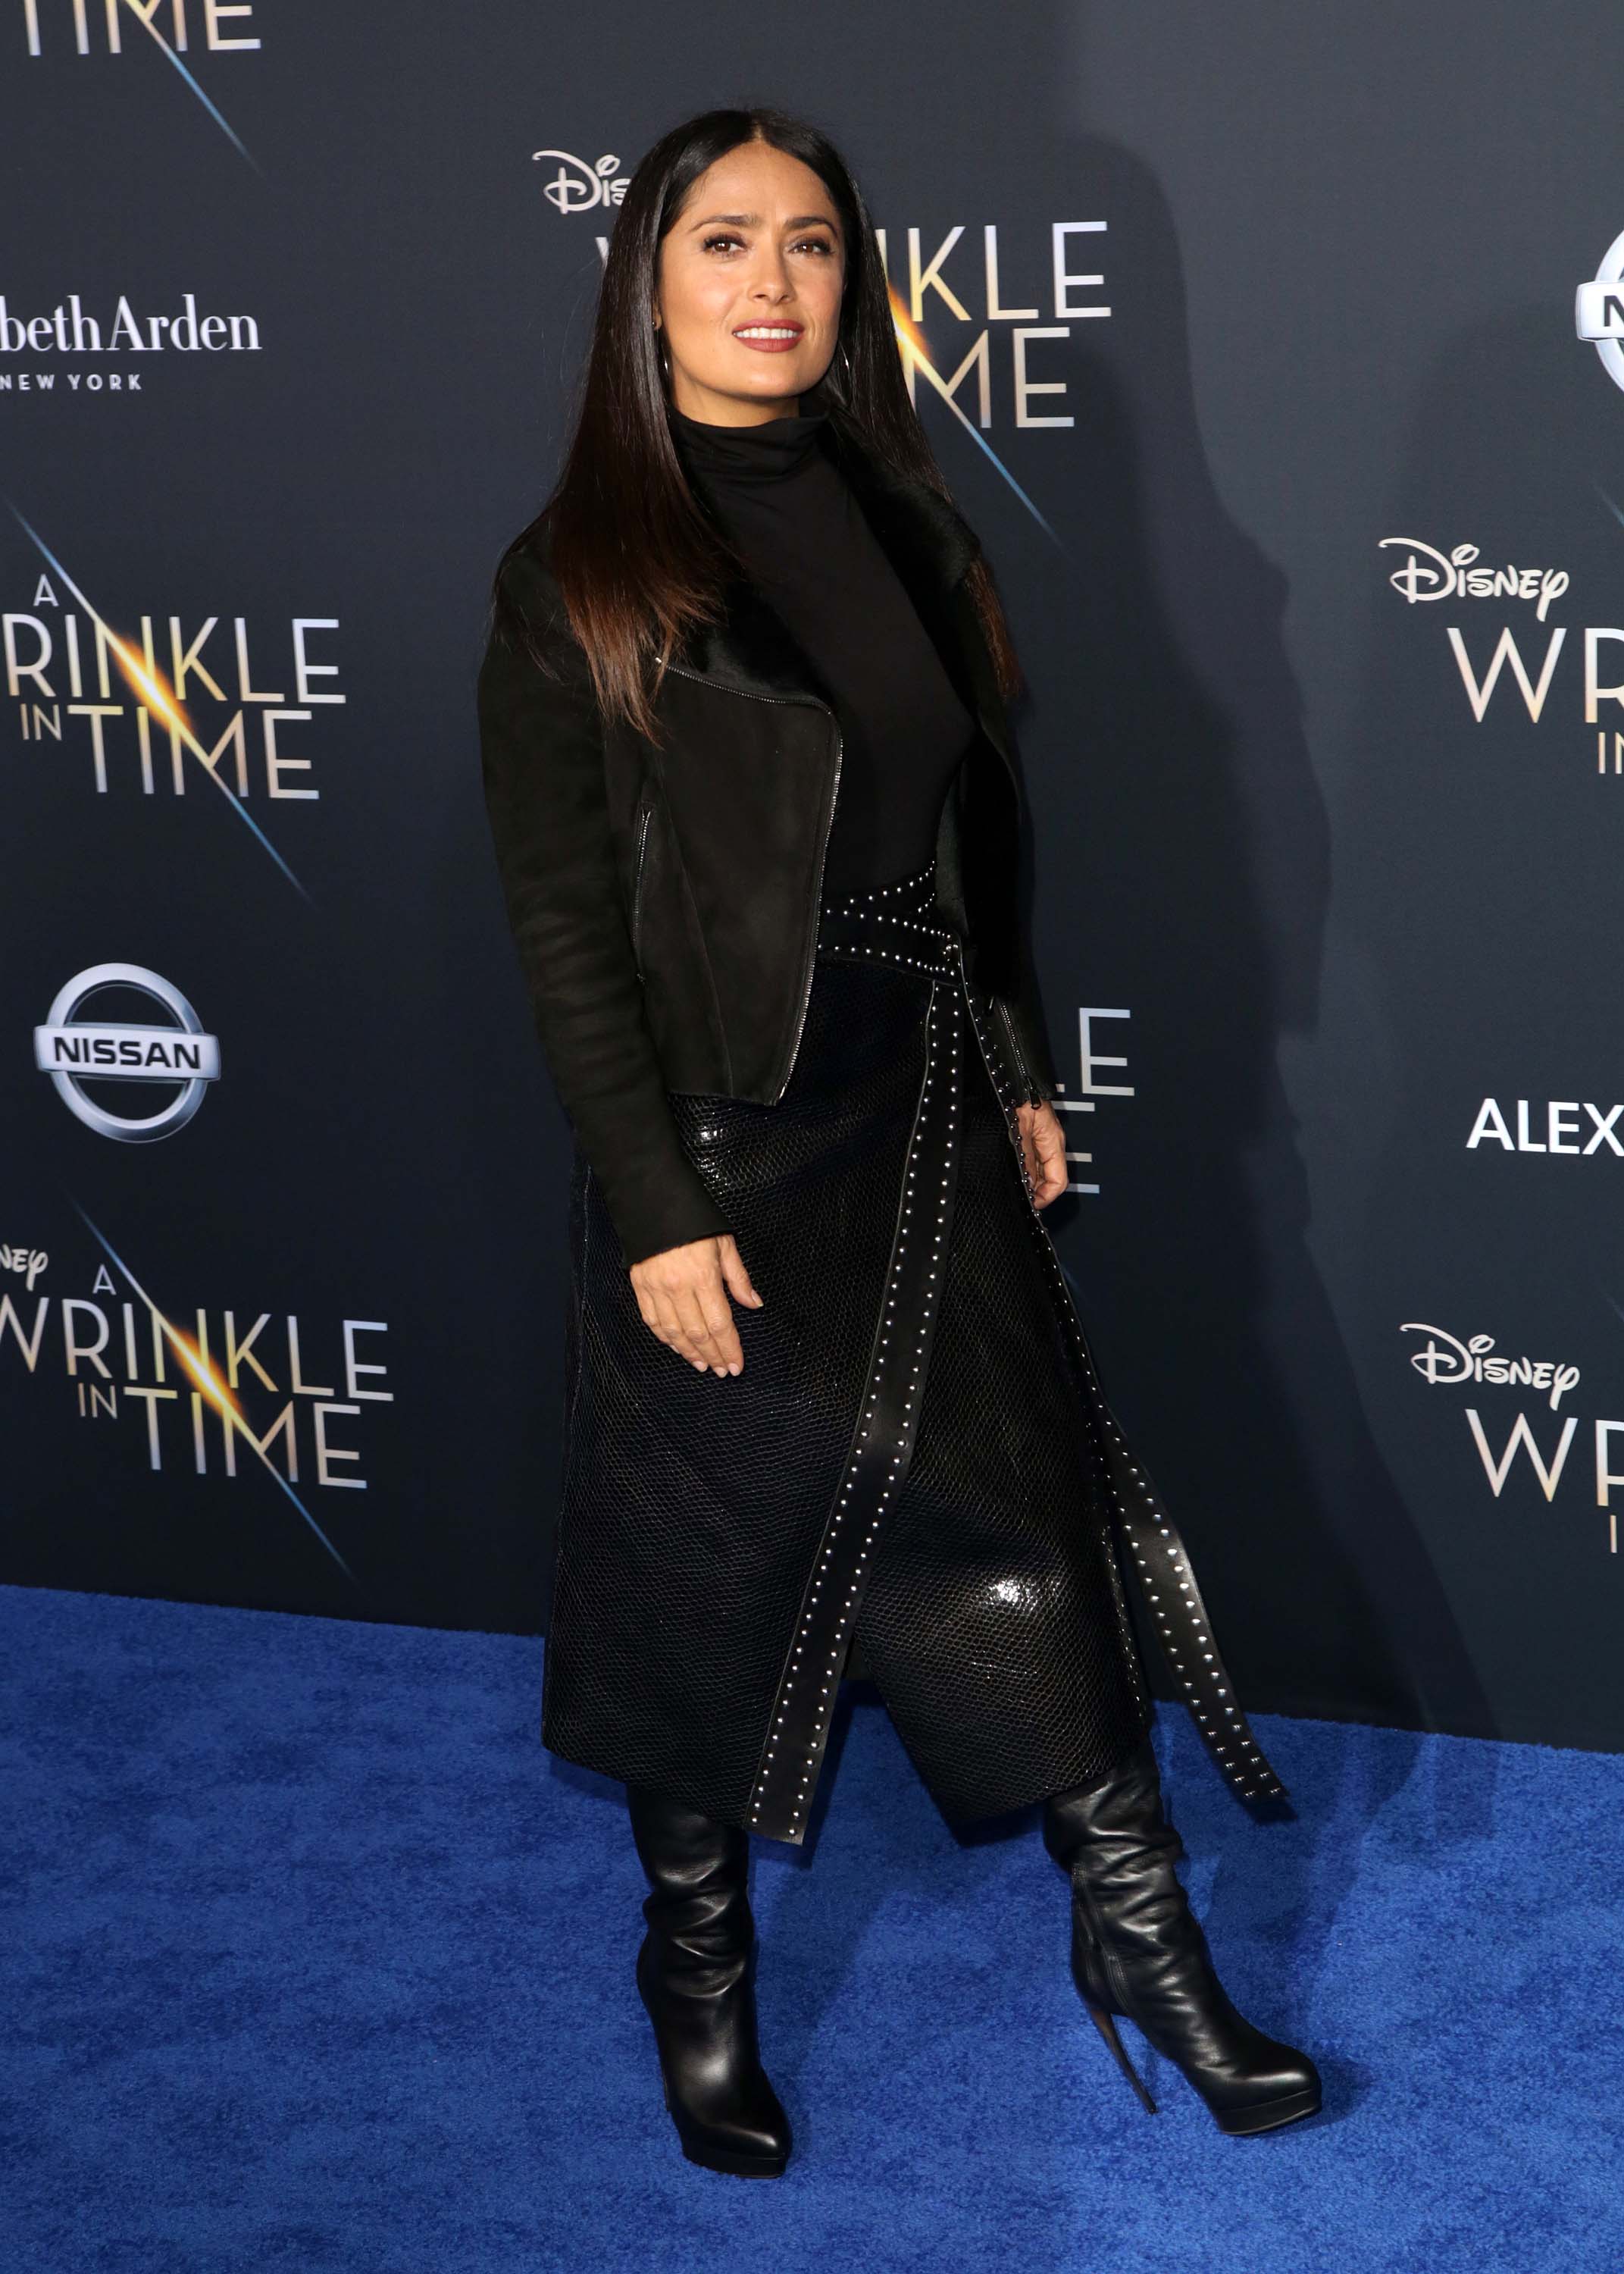 Salma Hayek attends A Wrinkle in Time Premiere